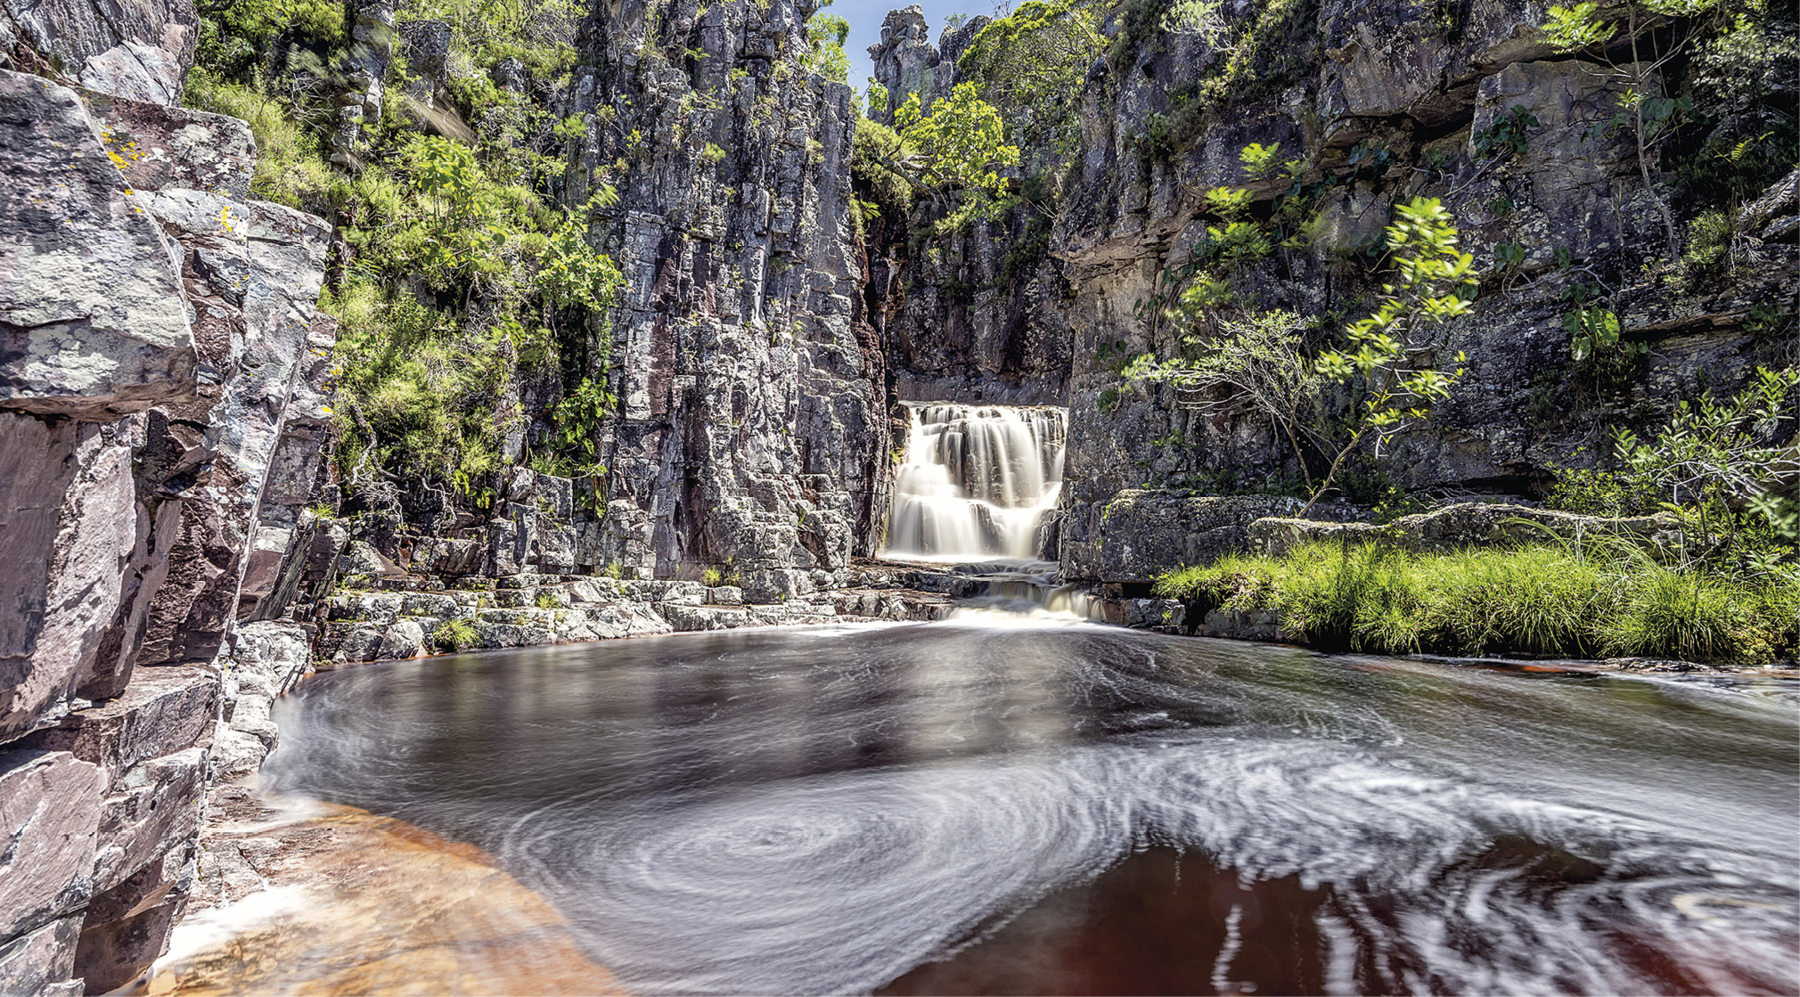 Fotografia. Em destaque, uma cachoeira cercada por paredões rochosos e vegetação verde. No primeiro plano, há uma grande quantidade de água que deriva da cachoeira.